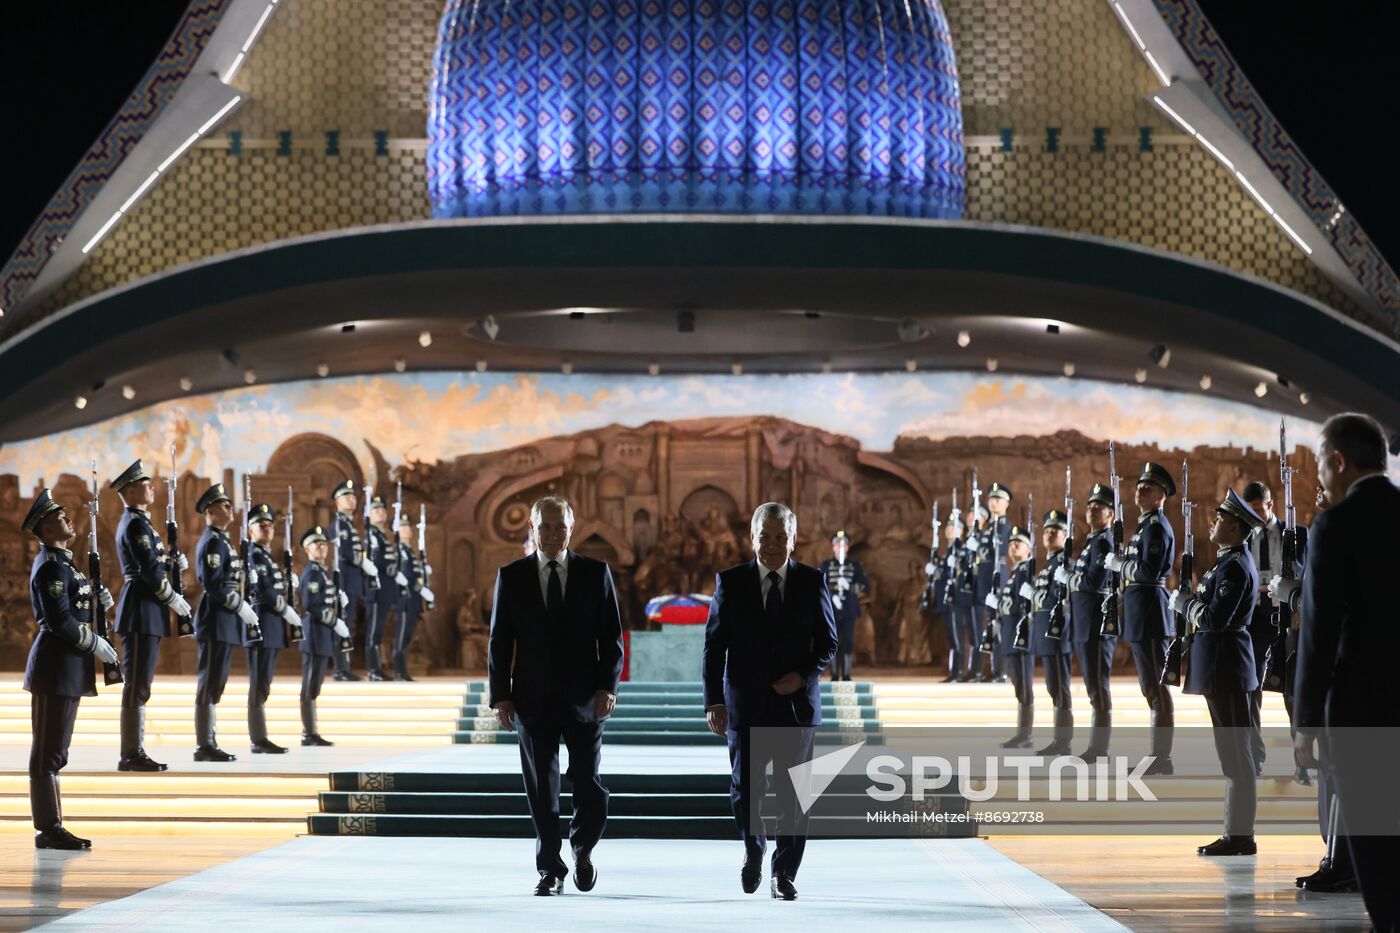 Uzbekistan Russia